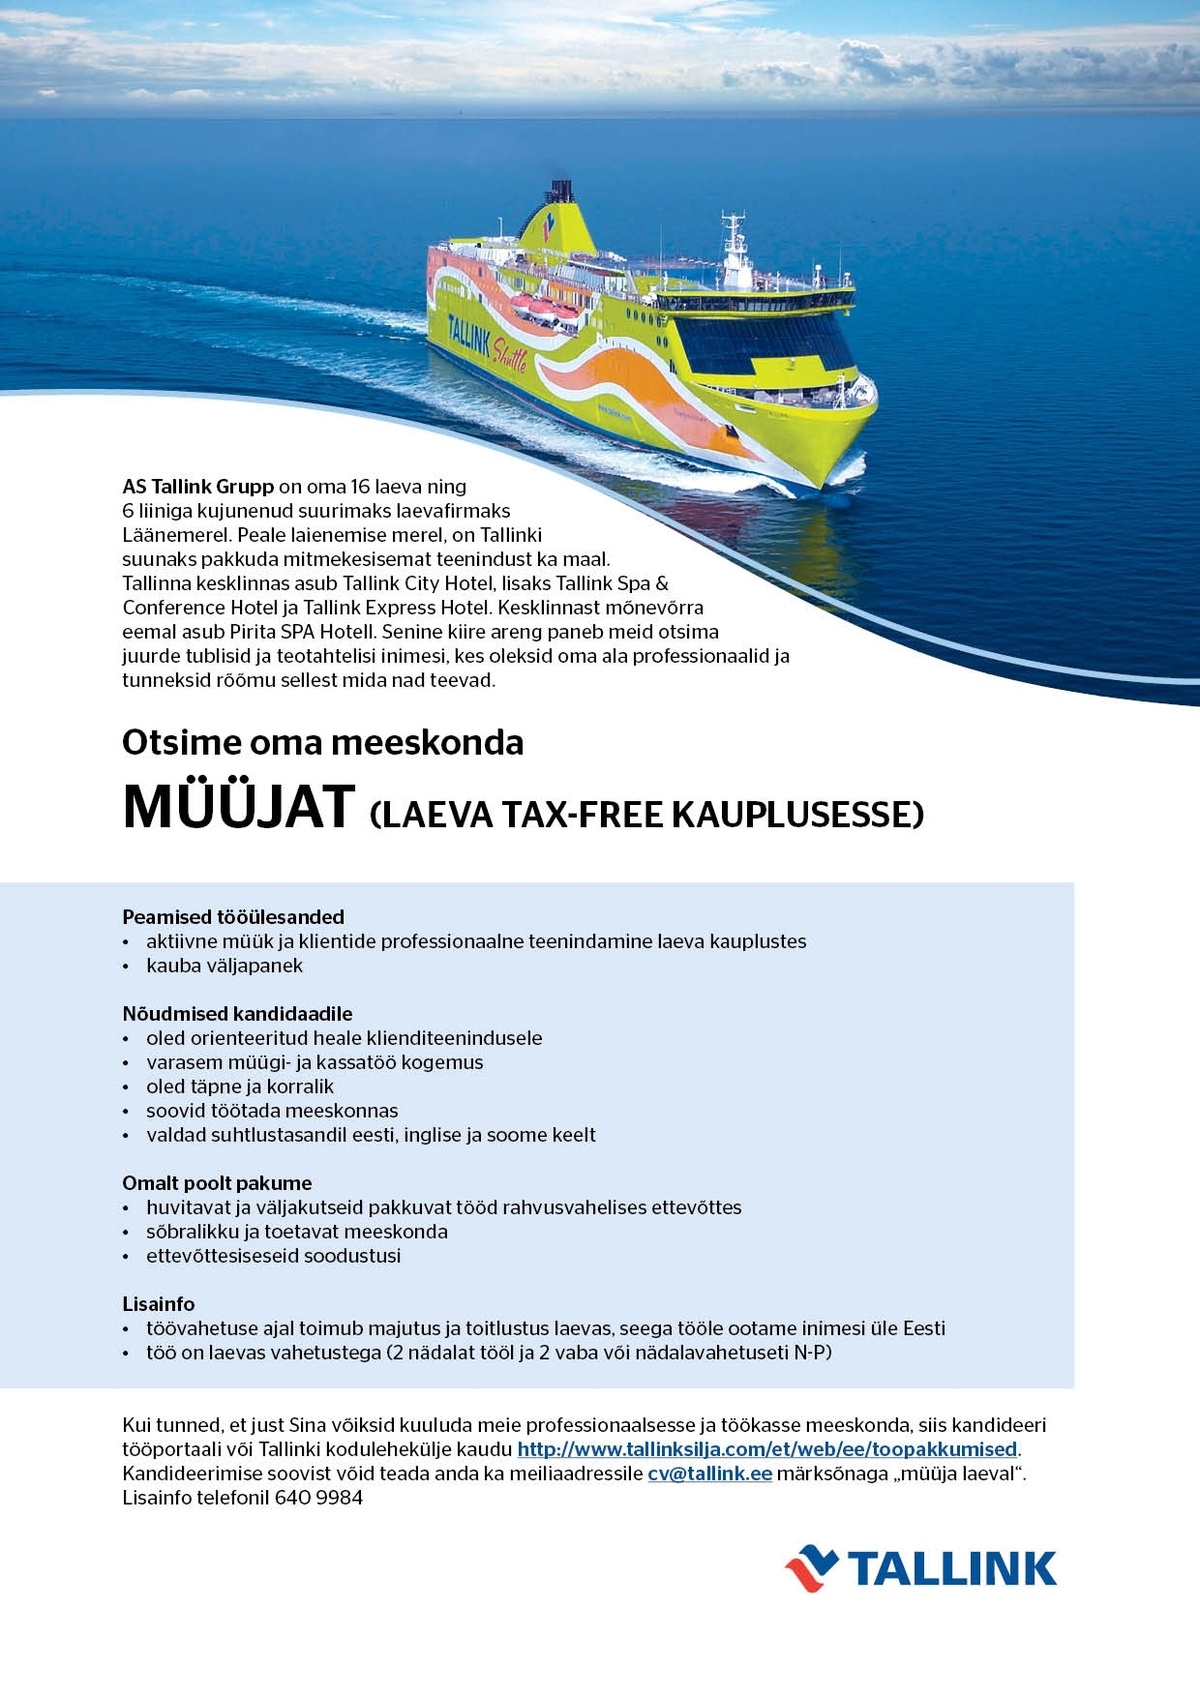 Tallink Grupp AS Müüja (laeva tax-free kaupluses)